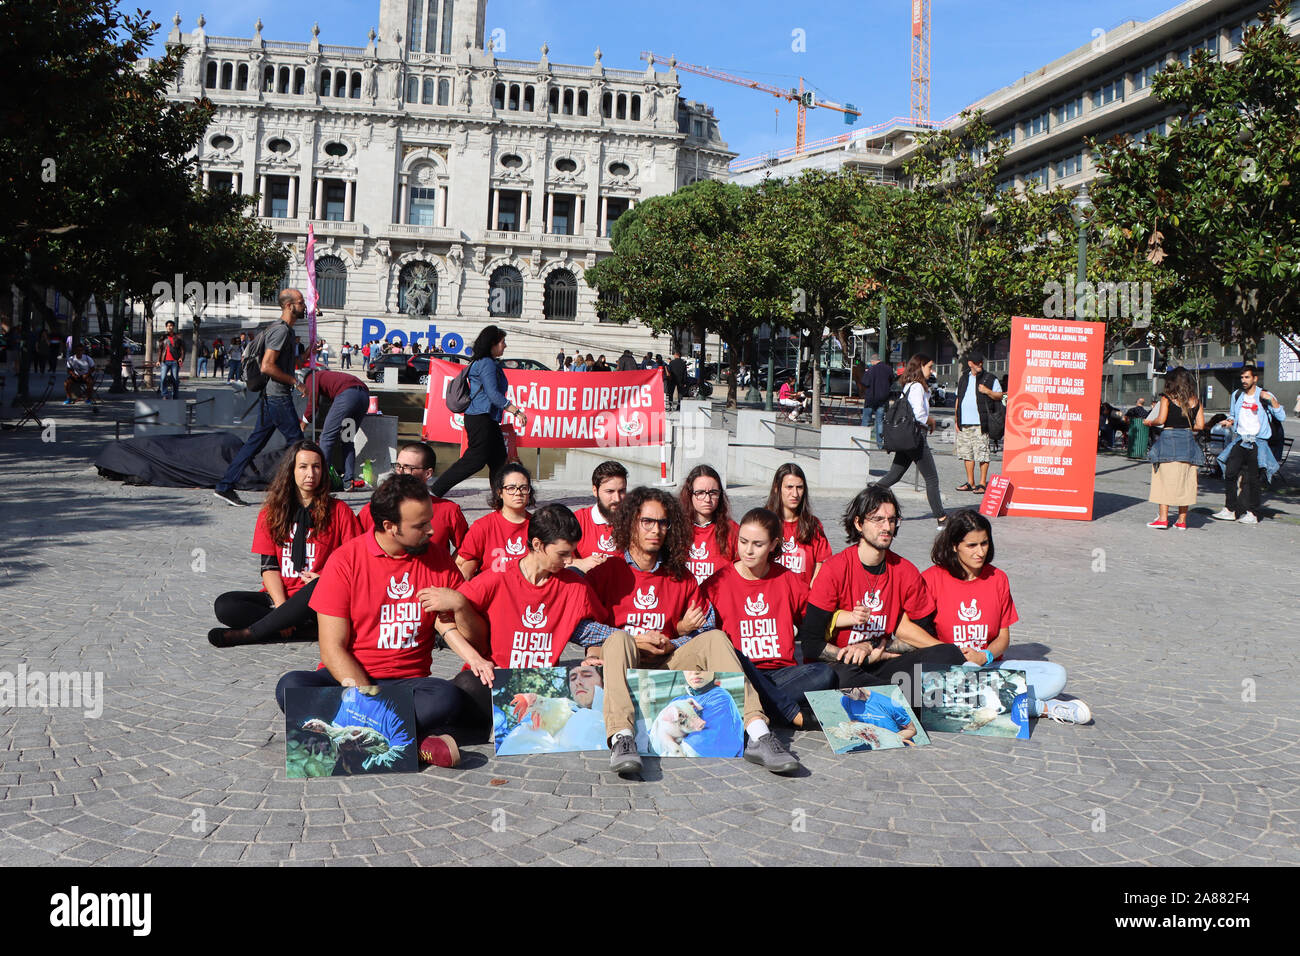 Porto, Portugal - Oktober 05, 2019: sind eine Gruppe von jungen Aktivisten protestieren für die Rechte der Tiere. Für die Tiere kämpfen. Stockfoto